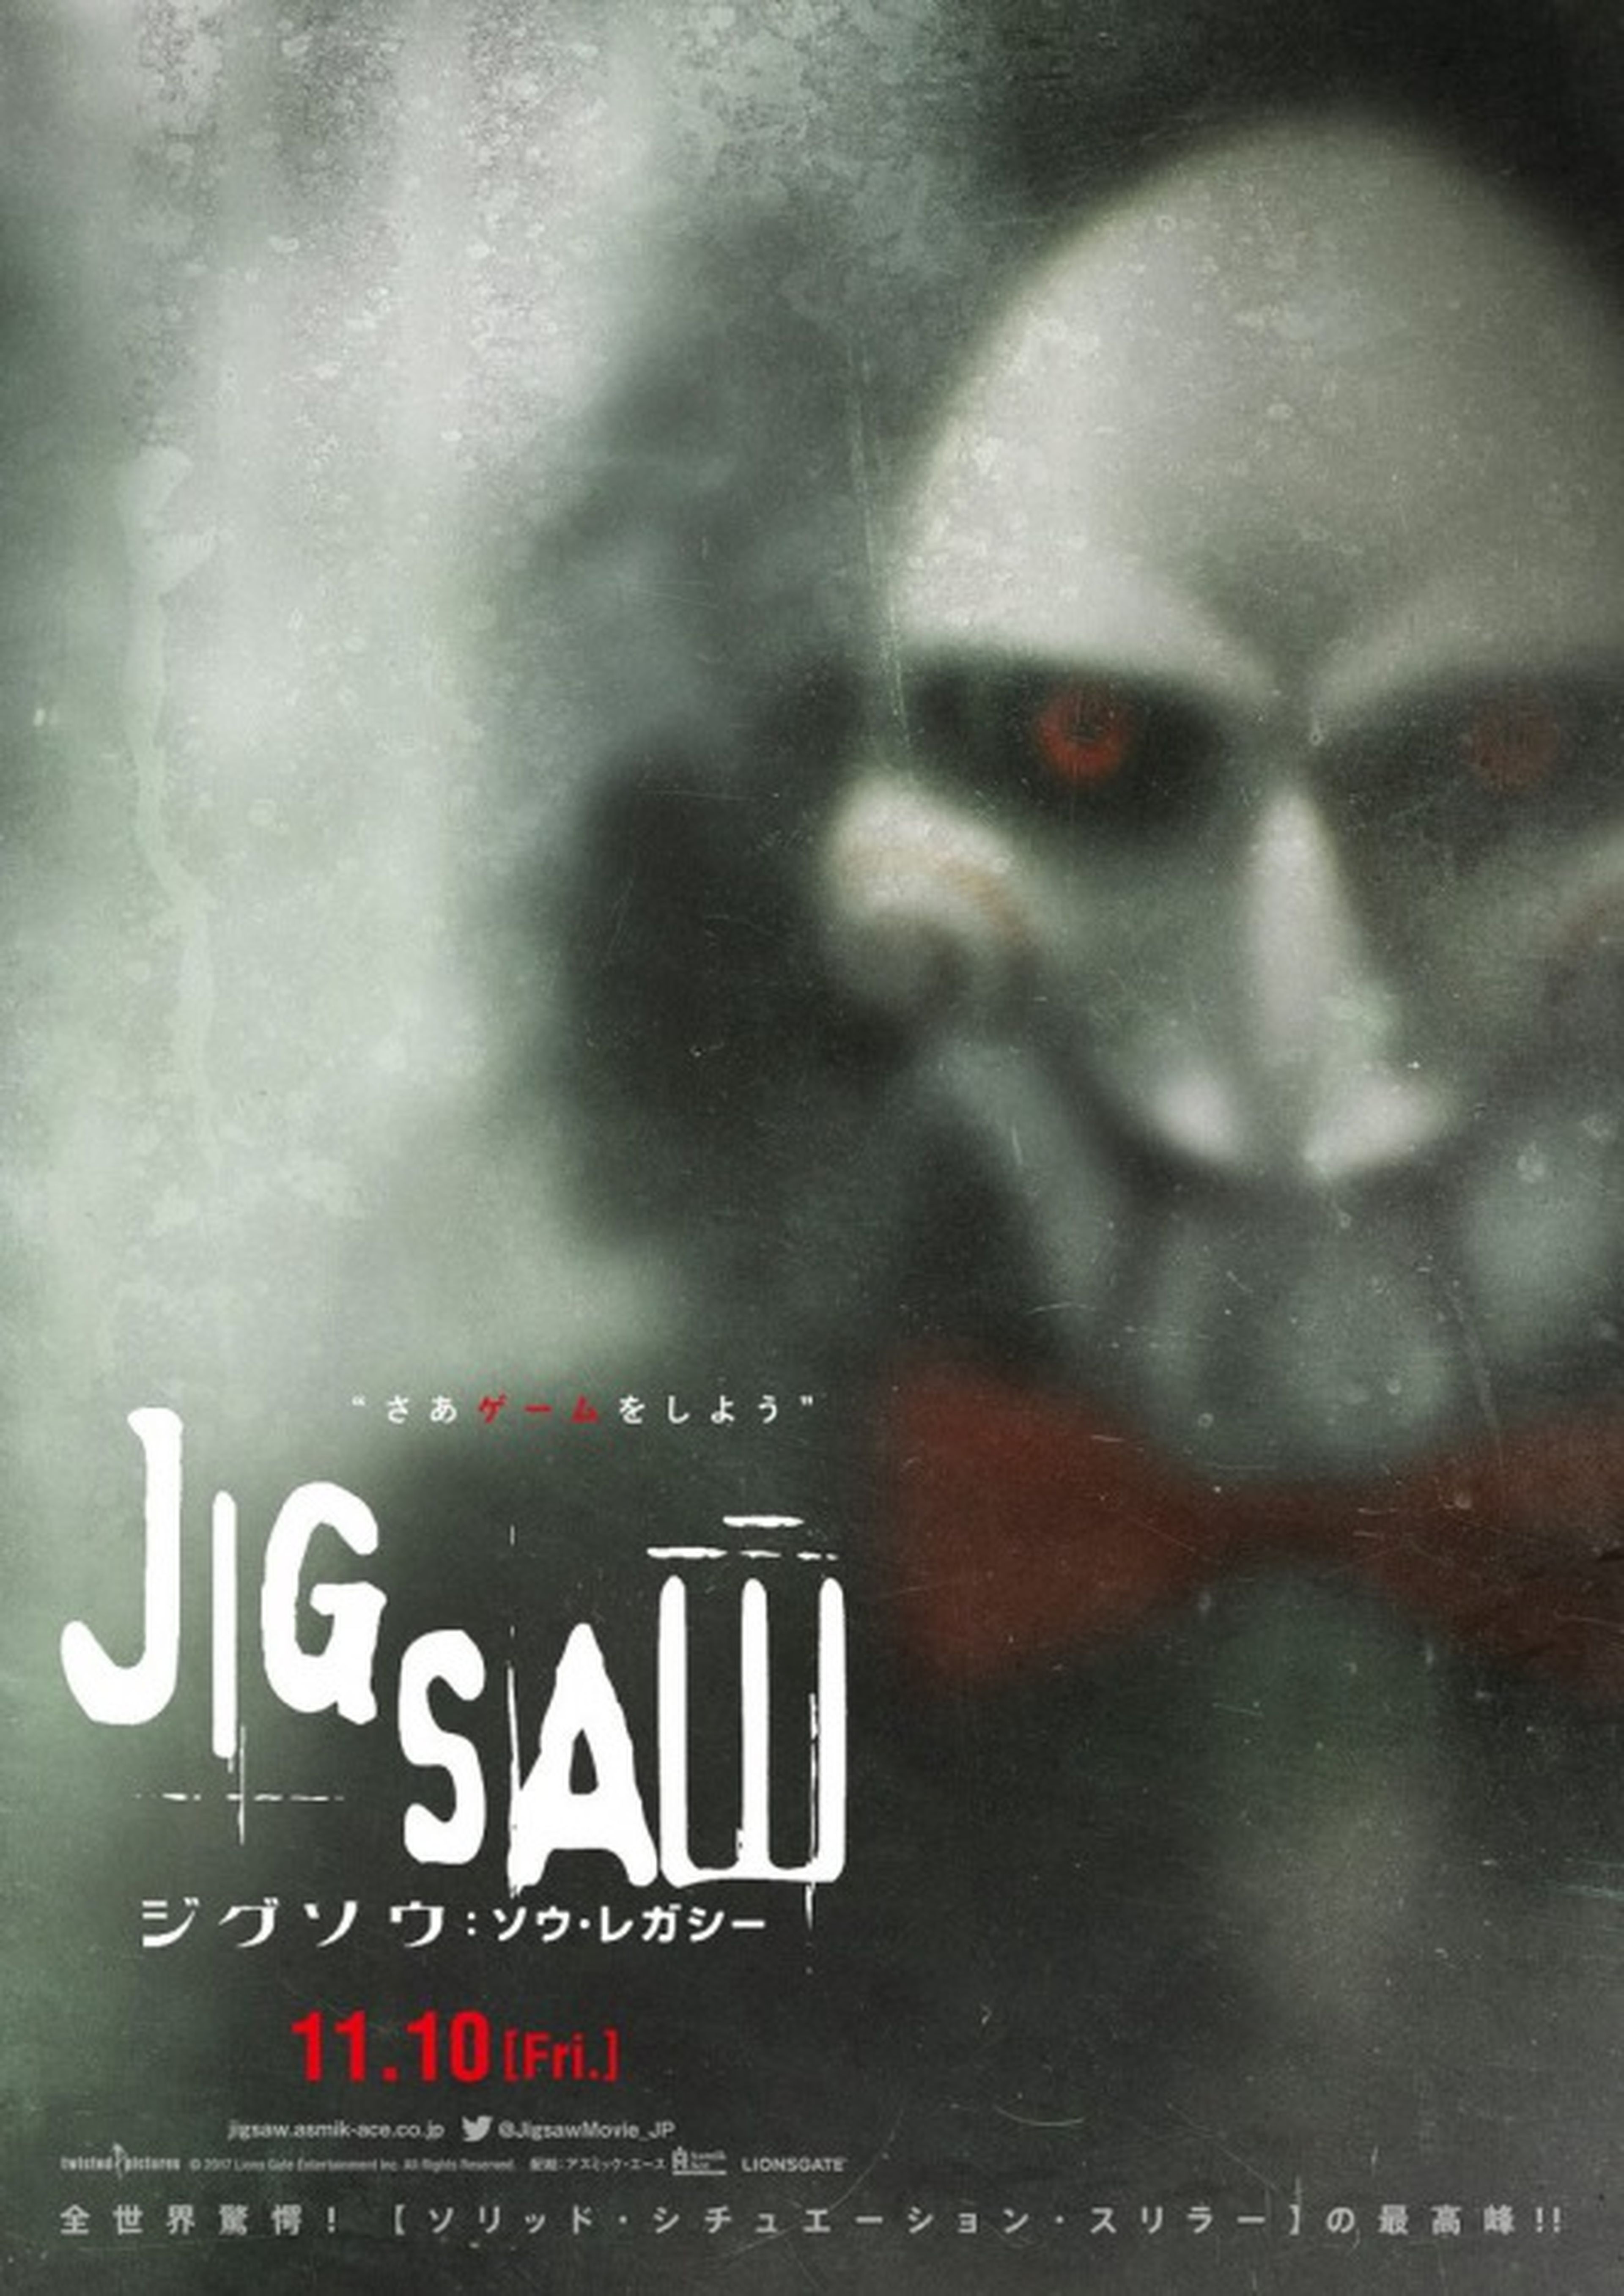 Jigsaw (Saw 8) estrena un nuevo y aterrador póster internacional